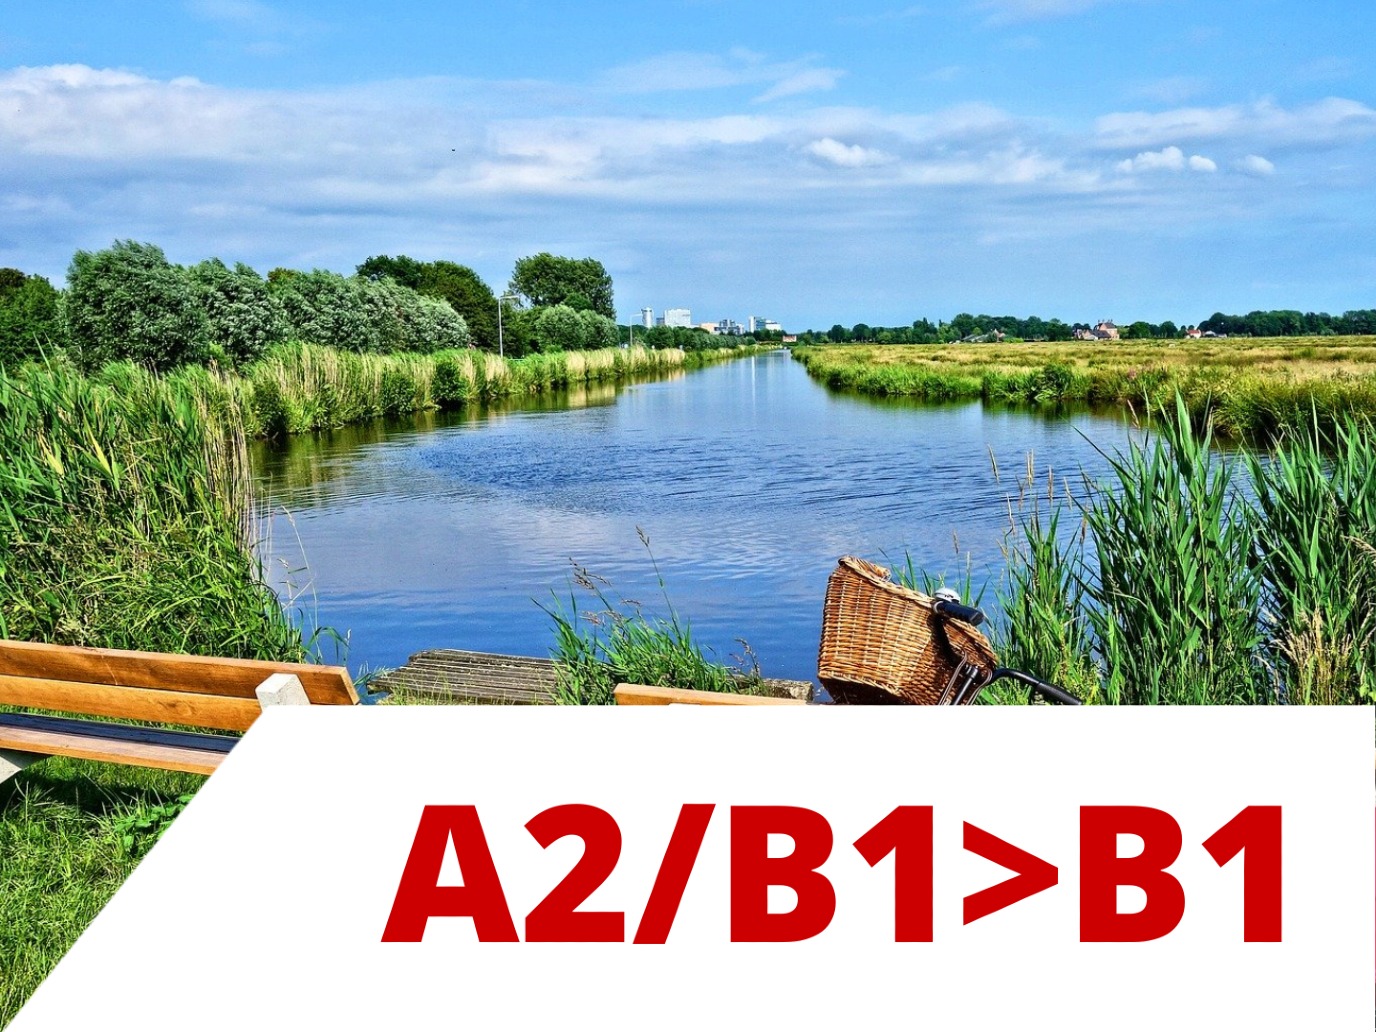 Dutch A2/B1>B1